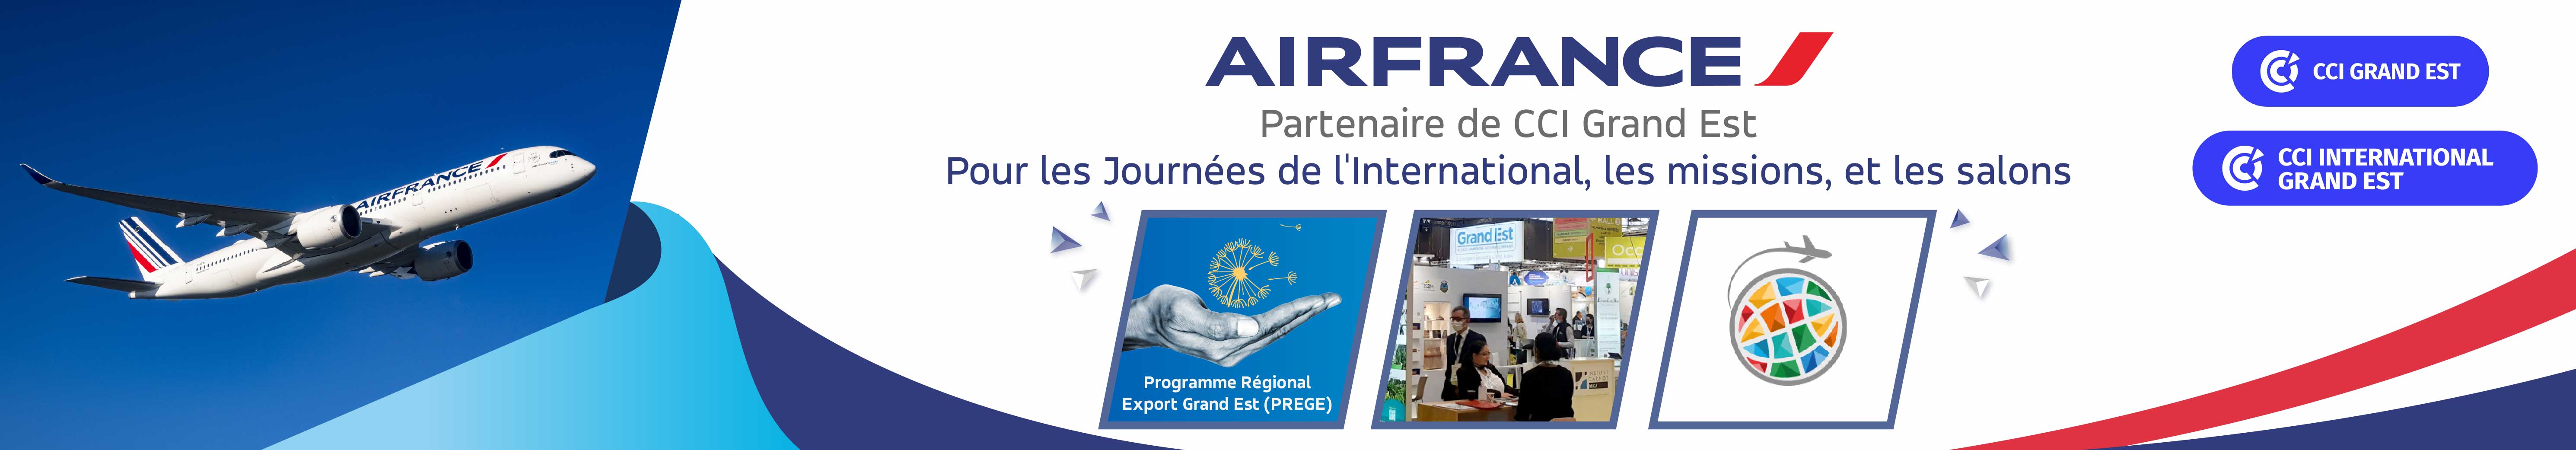 Air France partenaire de CCI Grand Est